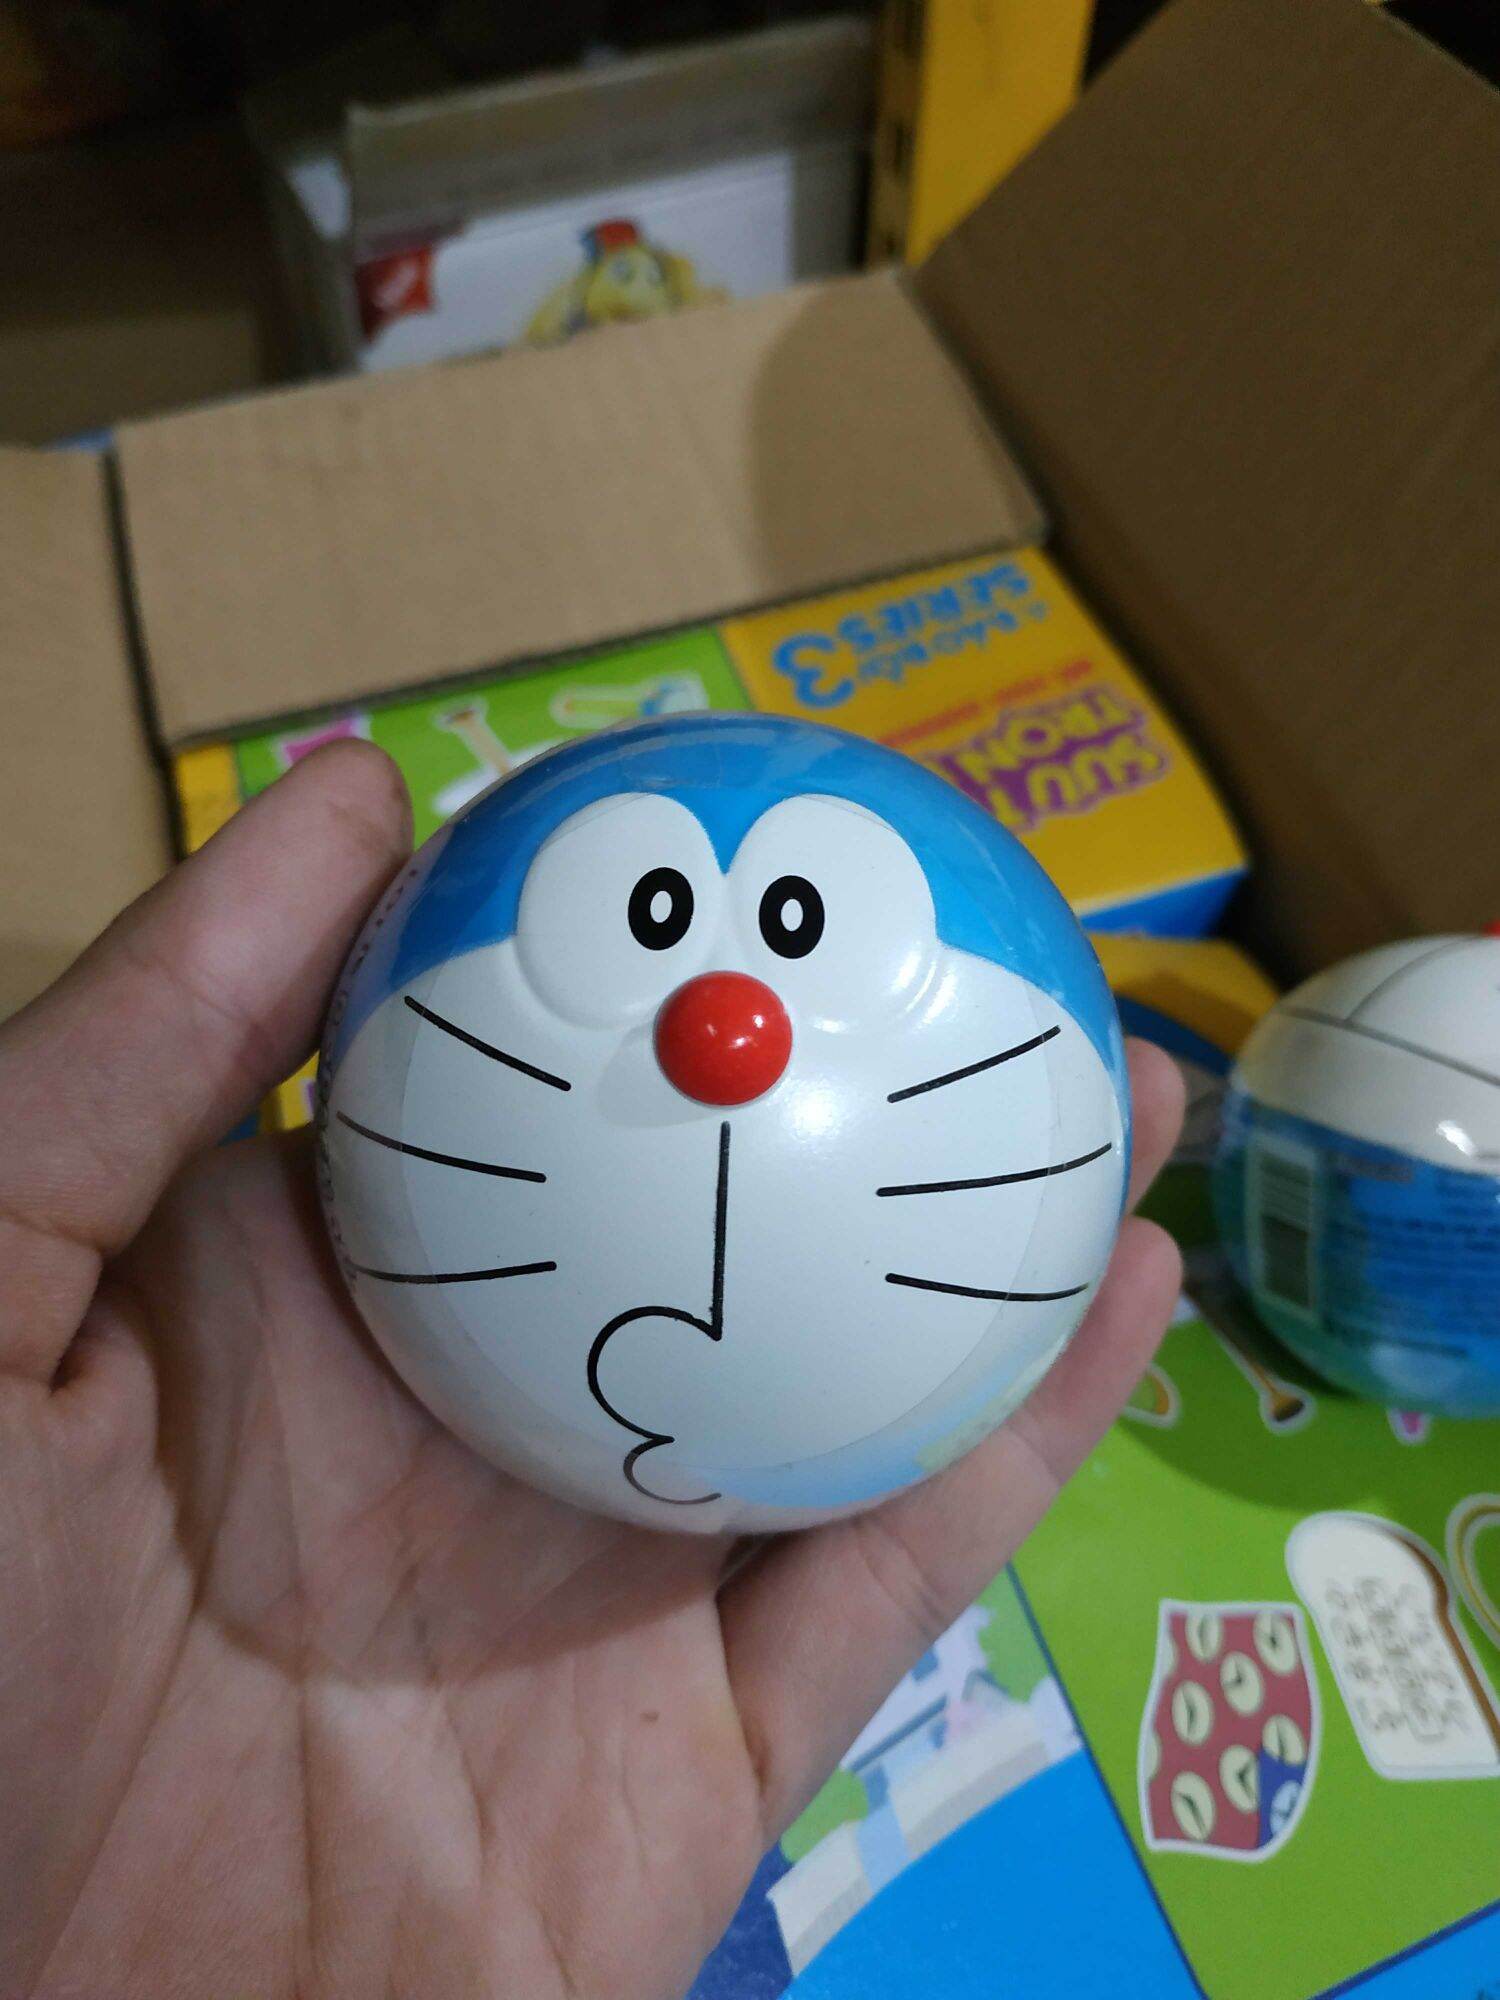 Bóng Doraemon kẹo gum hương cam Lotte  có mô hình doraemon xinh xắn bên